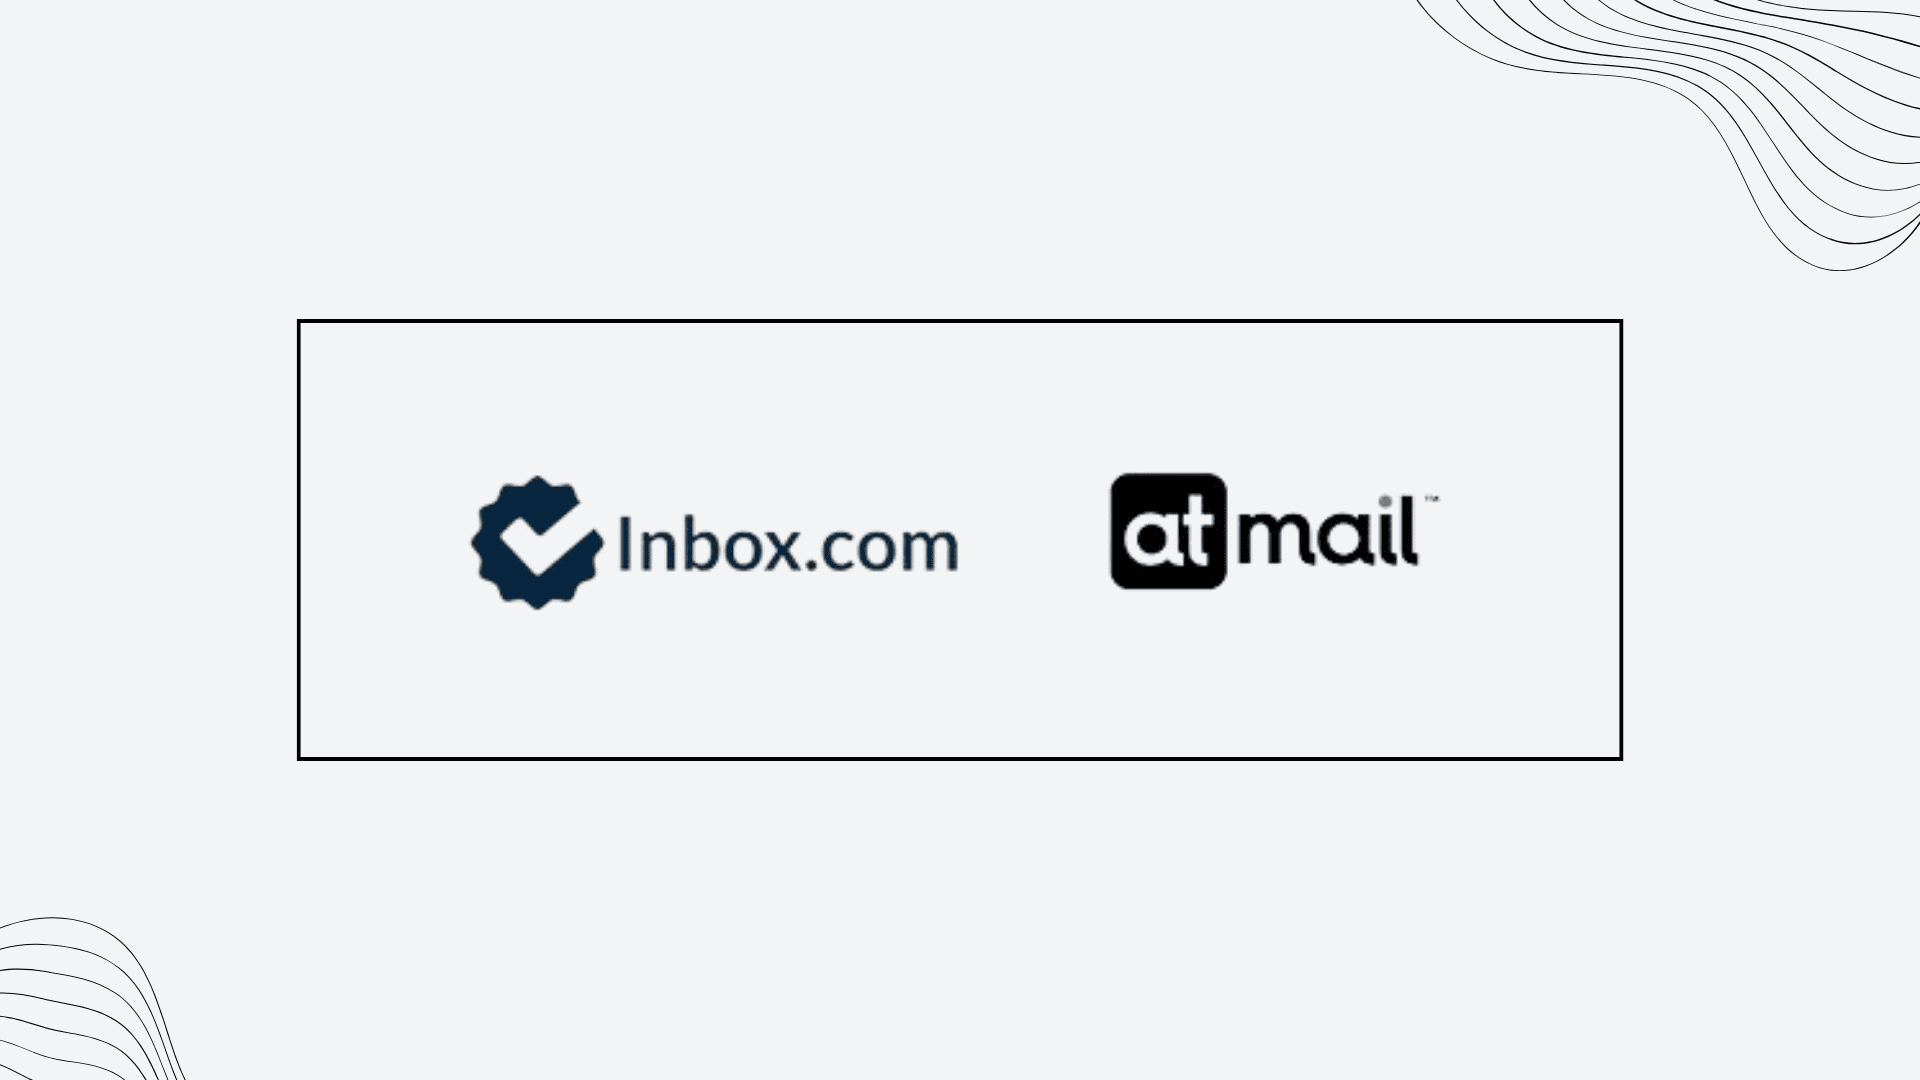 inbox.com inbox-com atmail